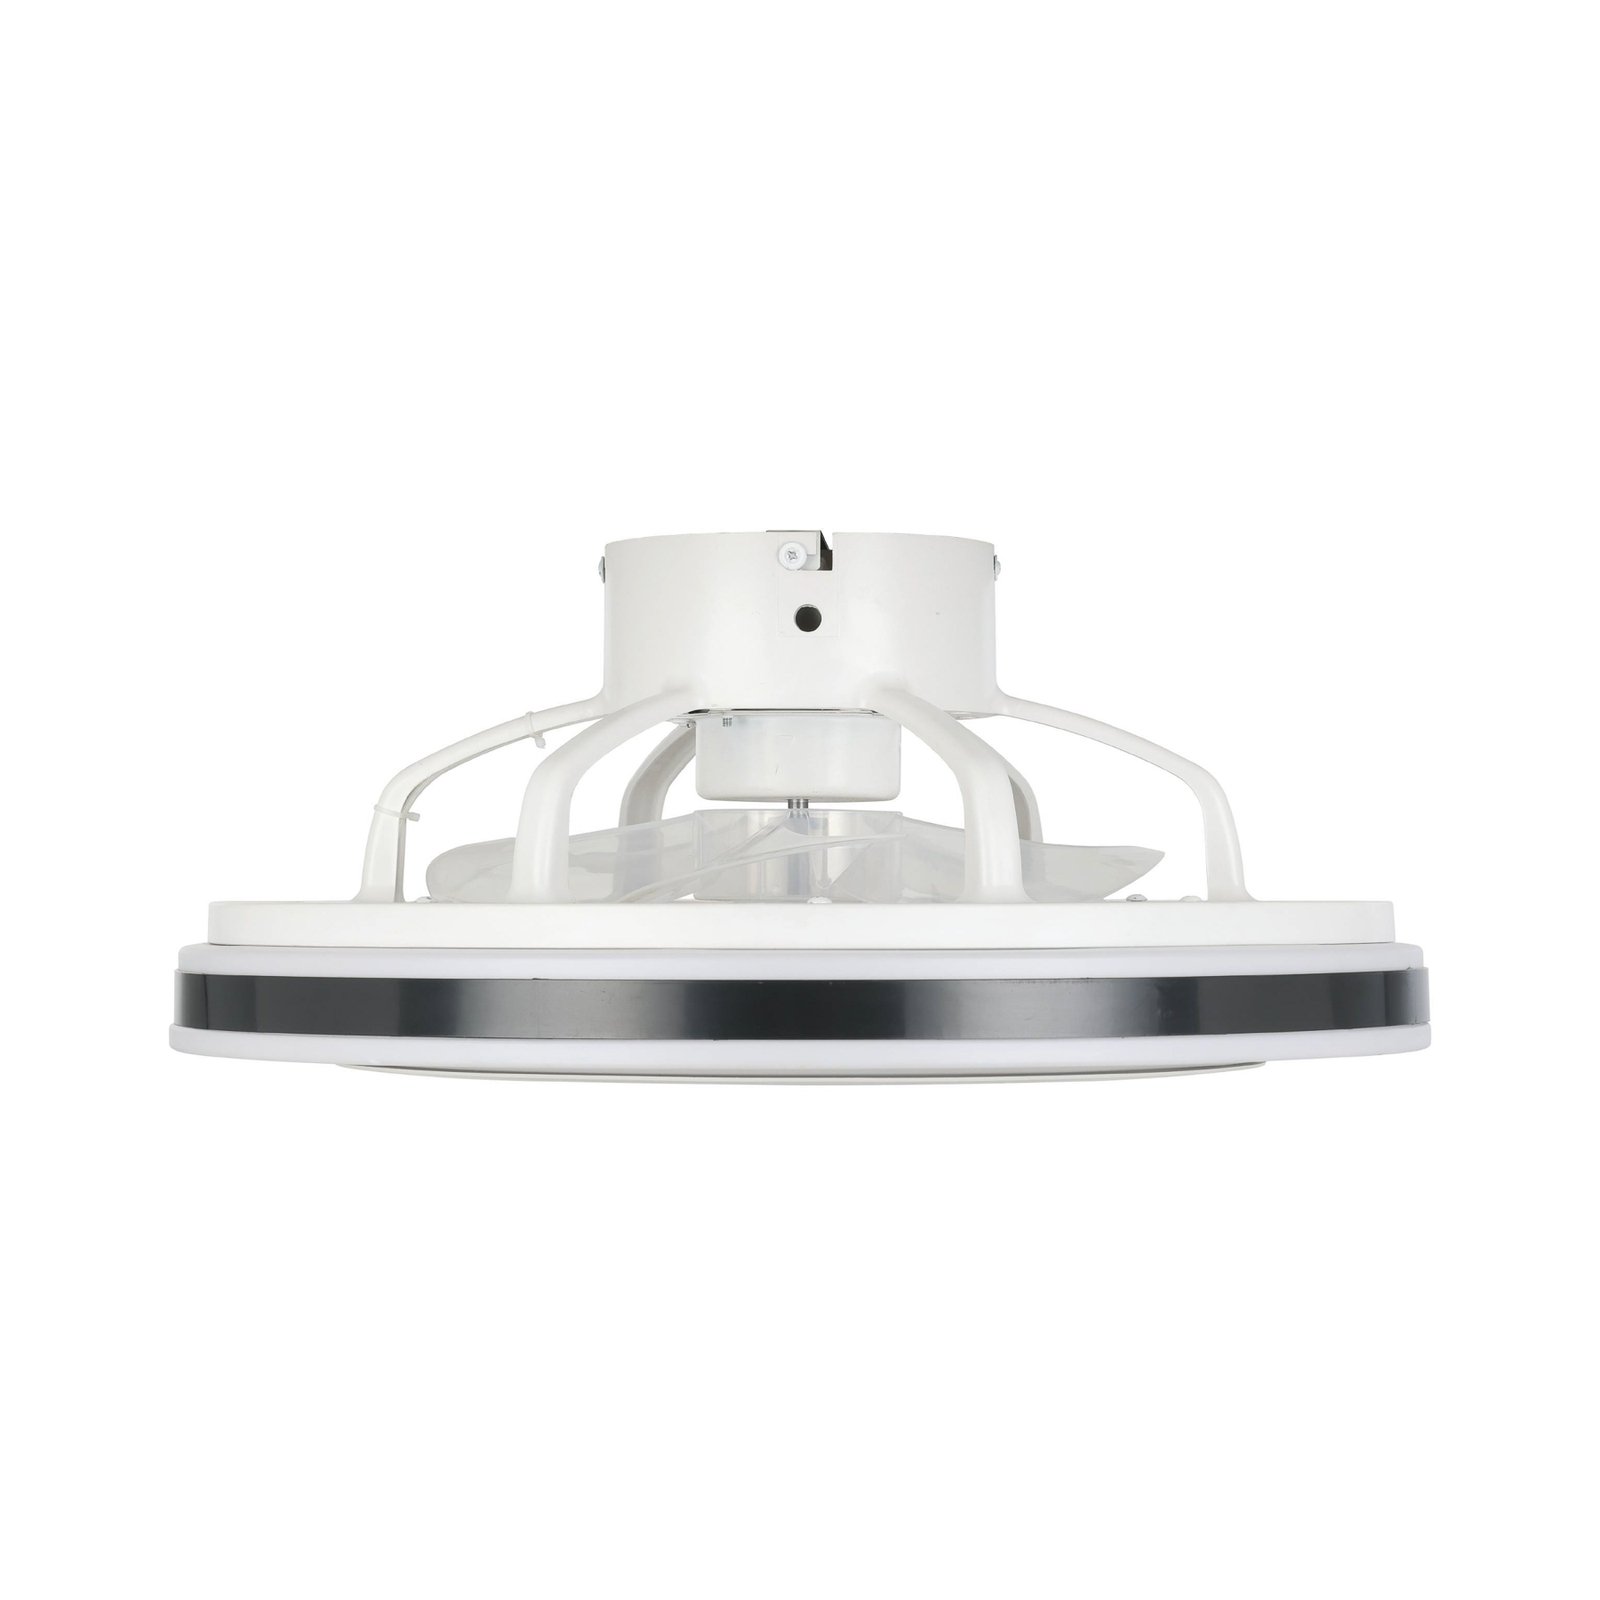 Stropní ventilátor Almeria LED CCT, bílá/černá